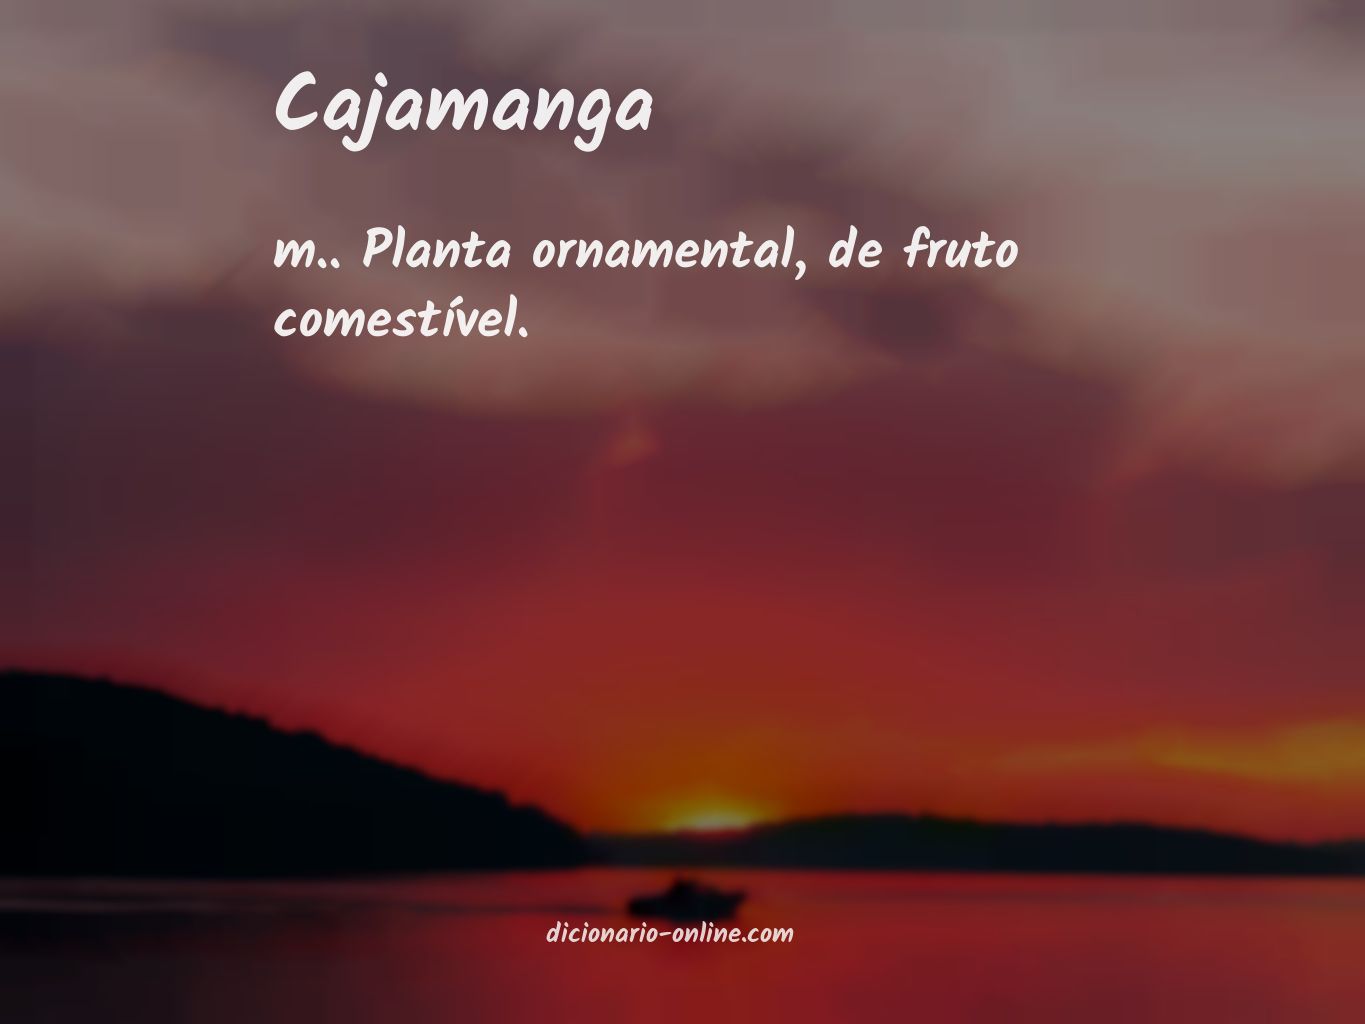 Significado de cajamanga